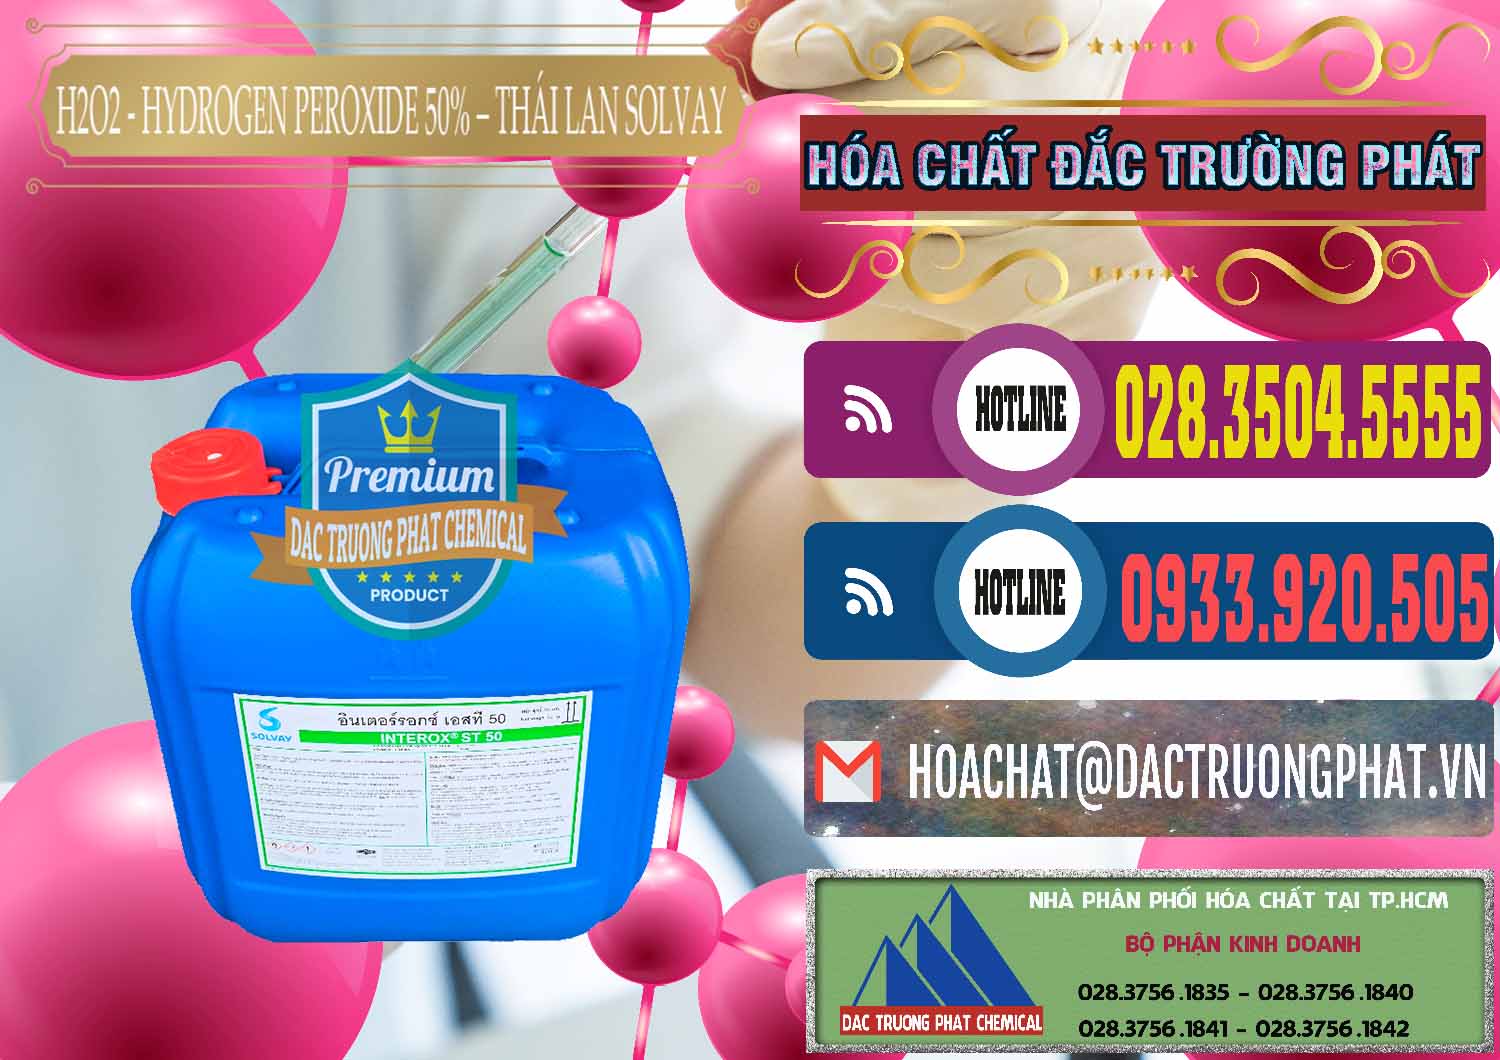 Nơi chuyên phân phối - bán H2O2 - Hydrogen Peroxide 50% Thái Lan Solvay - 0068 - Chuyên bán - phân phối hóa chất tại TP.HCM - muabanhoachat.com.vn